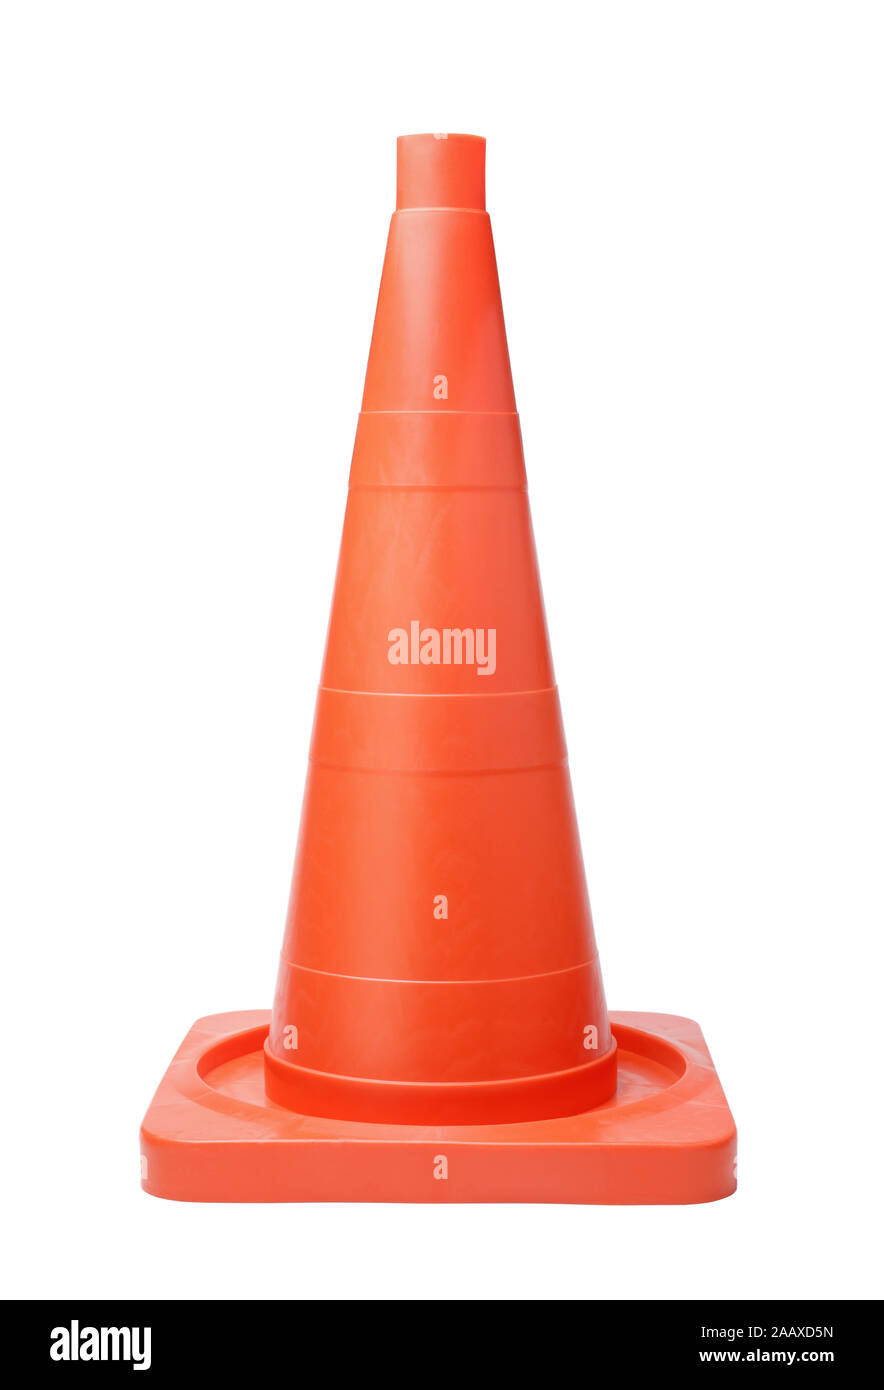 Orange trafic cone isolated on white background Stock Photo